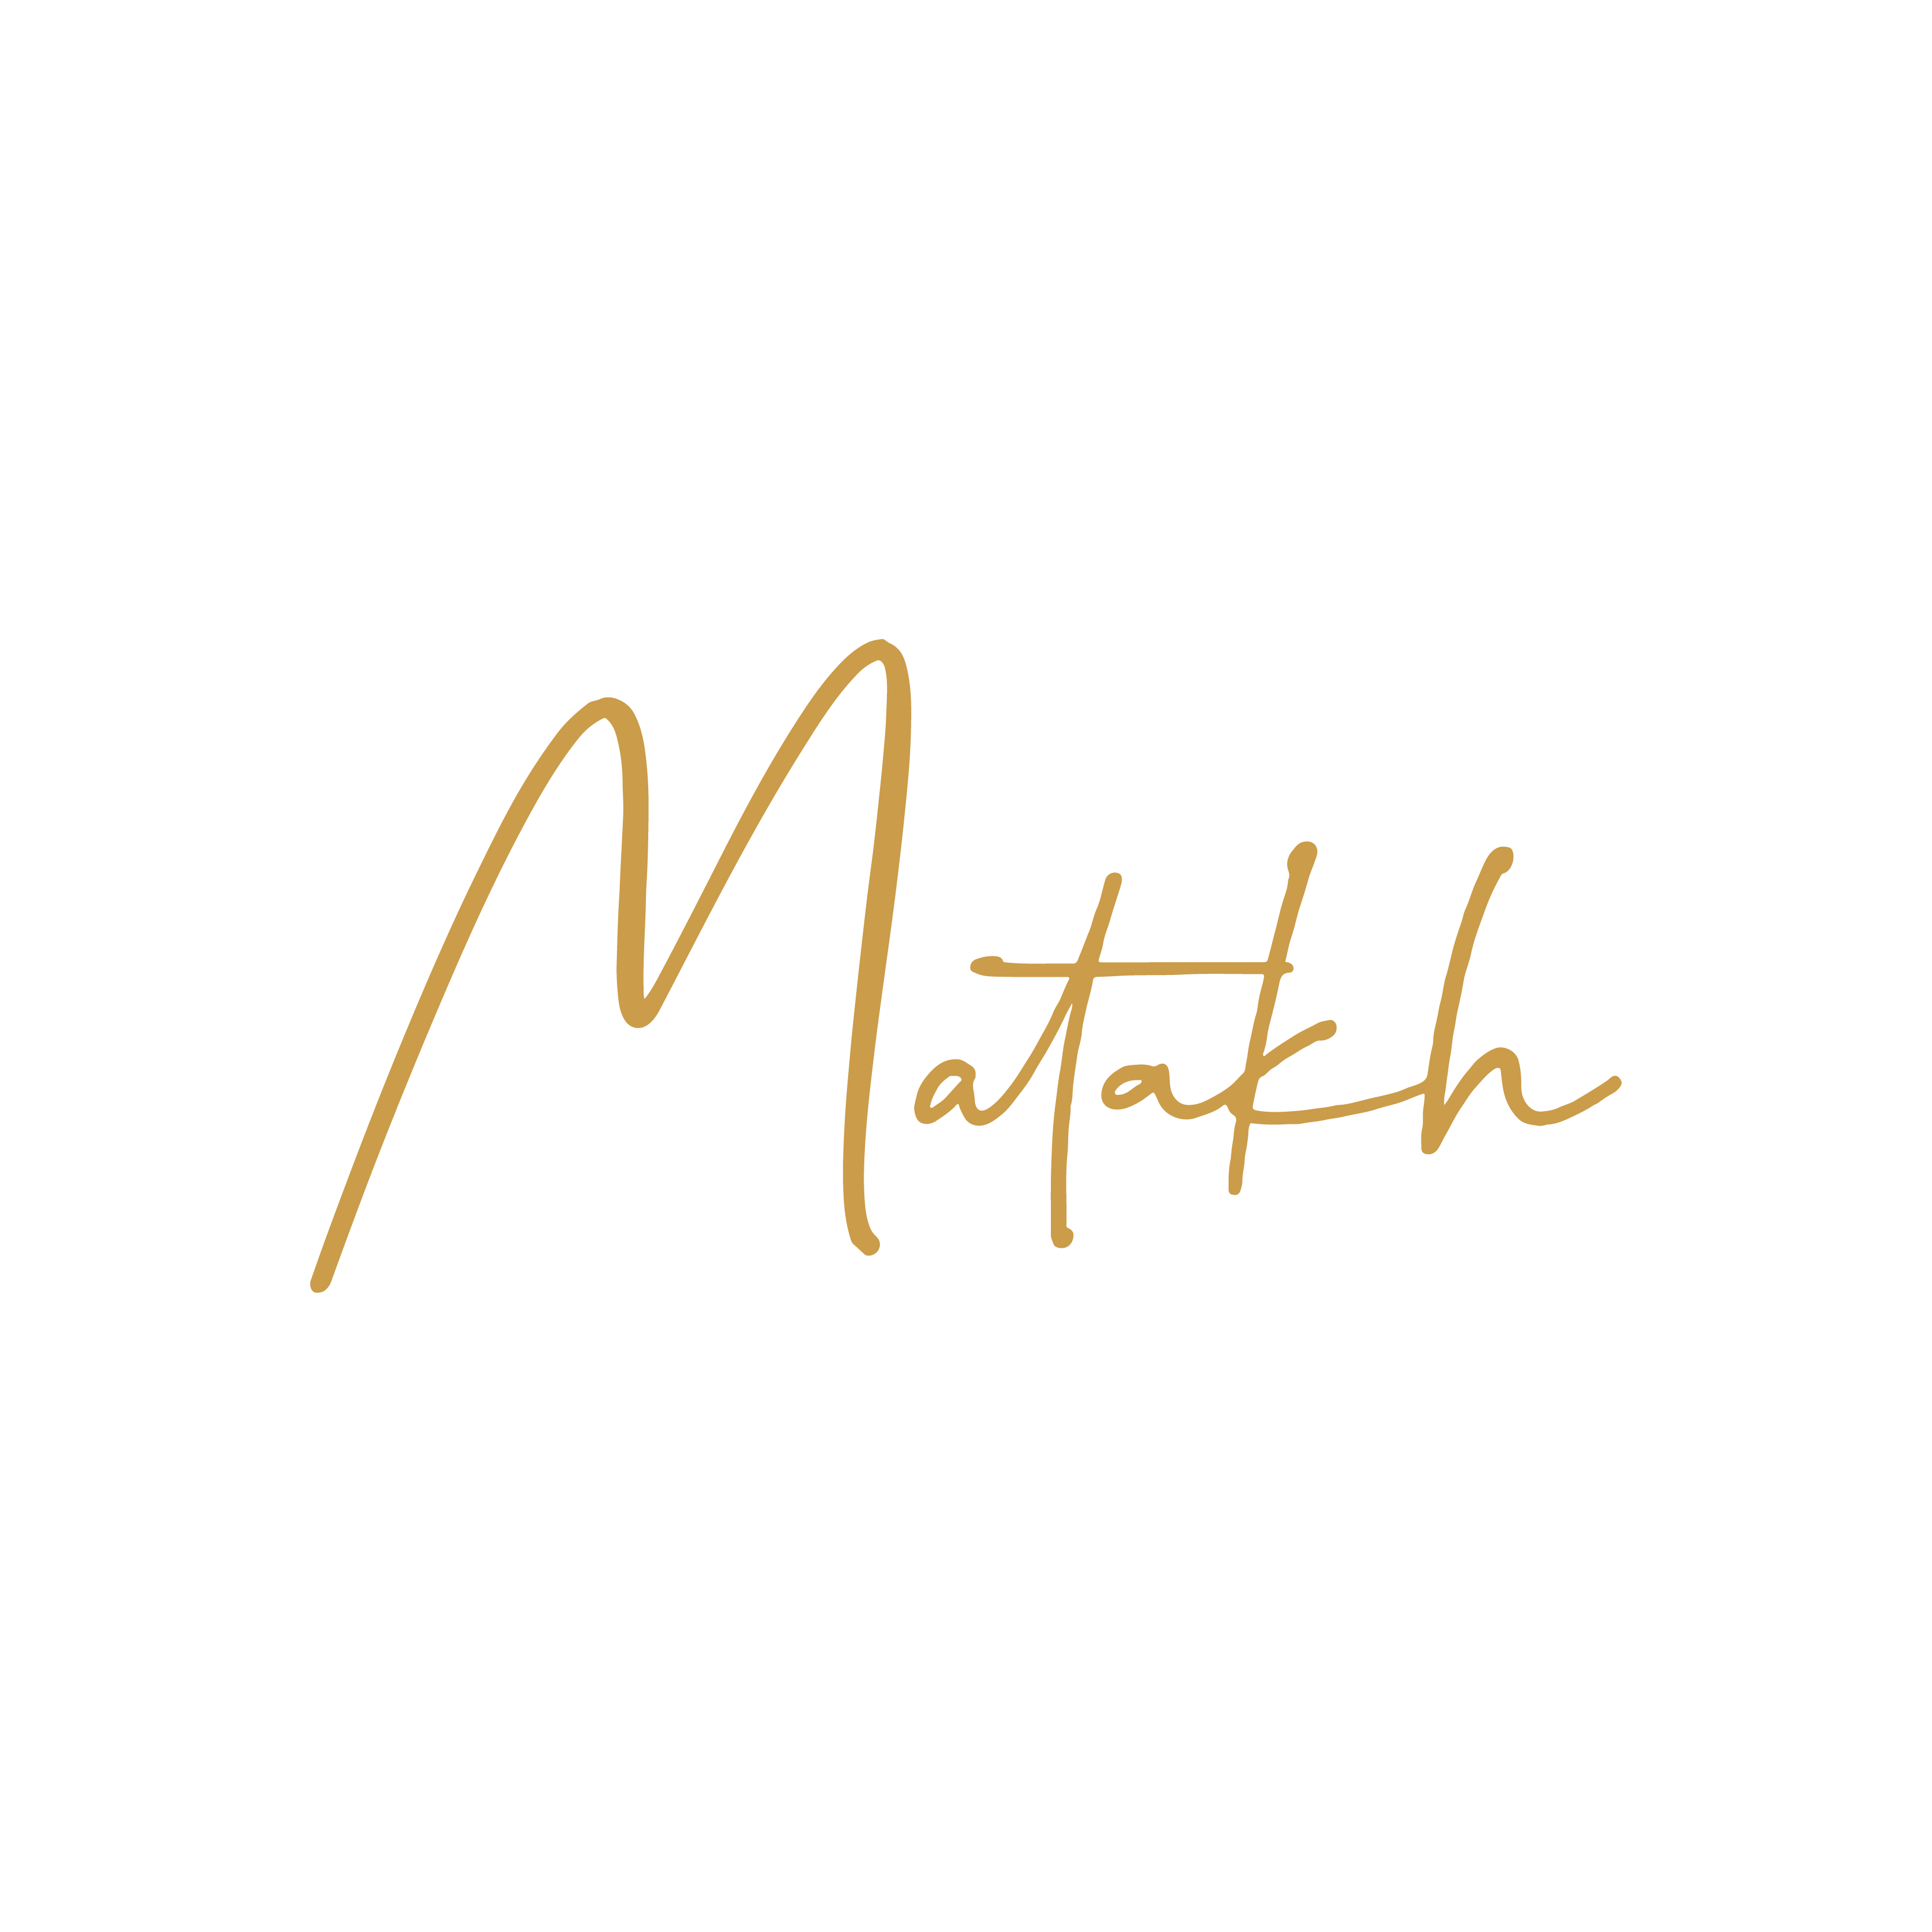 Matakh – Matakh.my